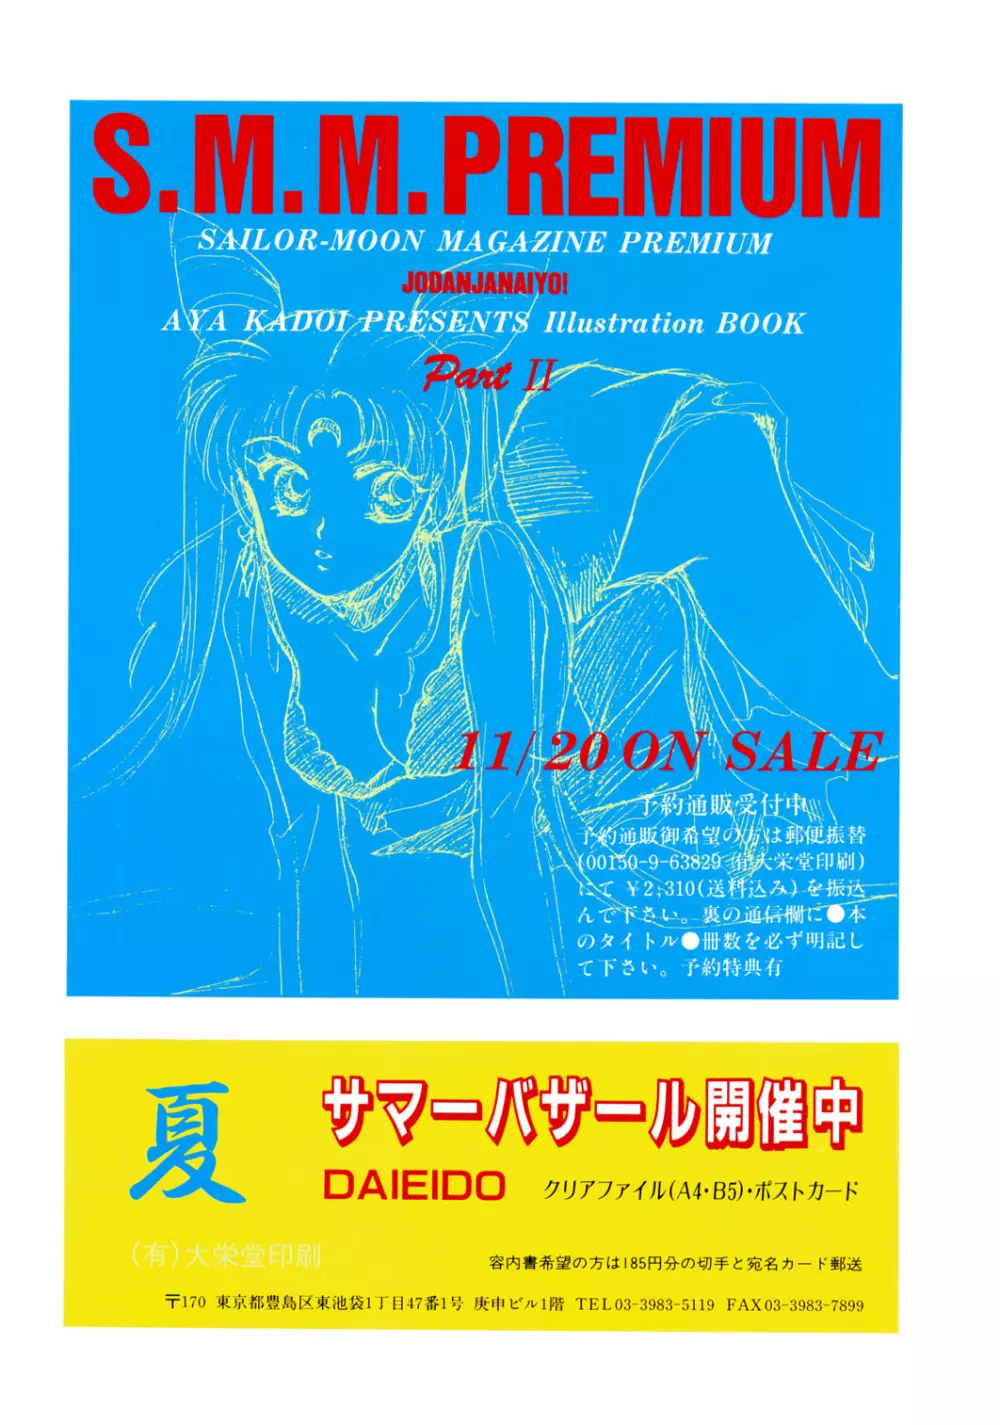 Sailor Moon JodanJanaiyo 138ページ